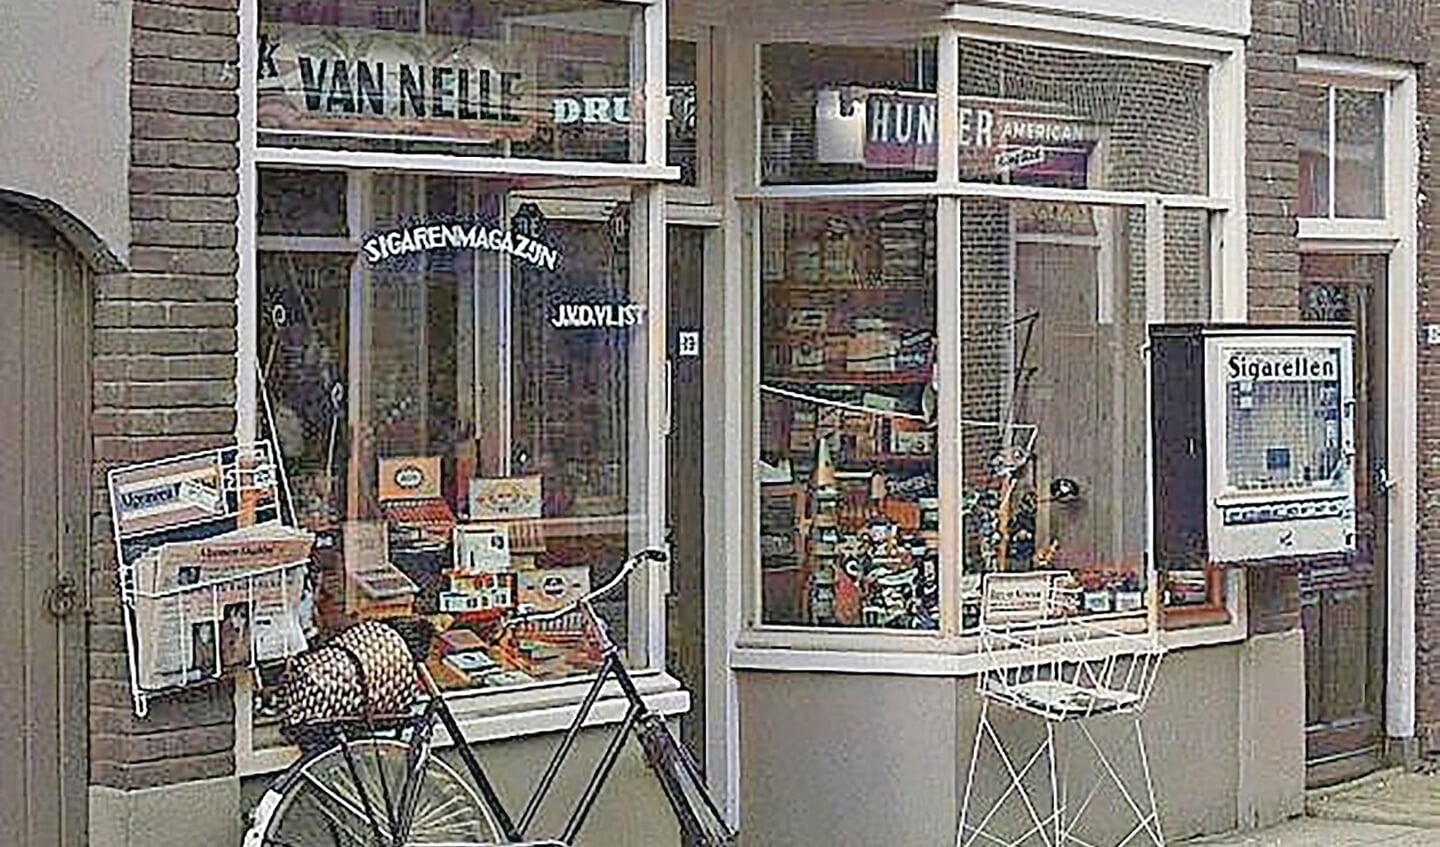 Het sigarenmagazijn 'J.v.d. Vlist' Leeuweringerstraat 19 (nu natuurvoedingswinkel 'Zon en Maan') met sigarettenautomaat.